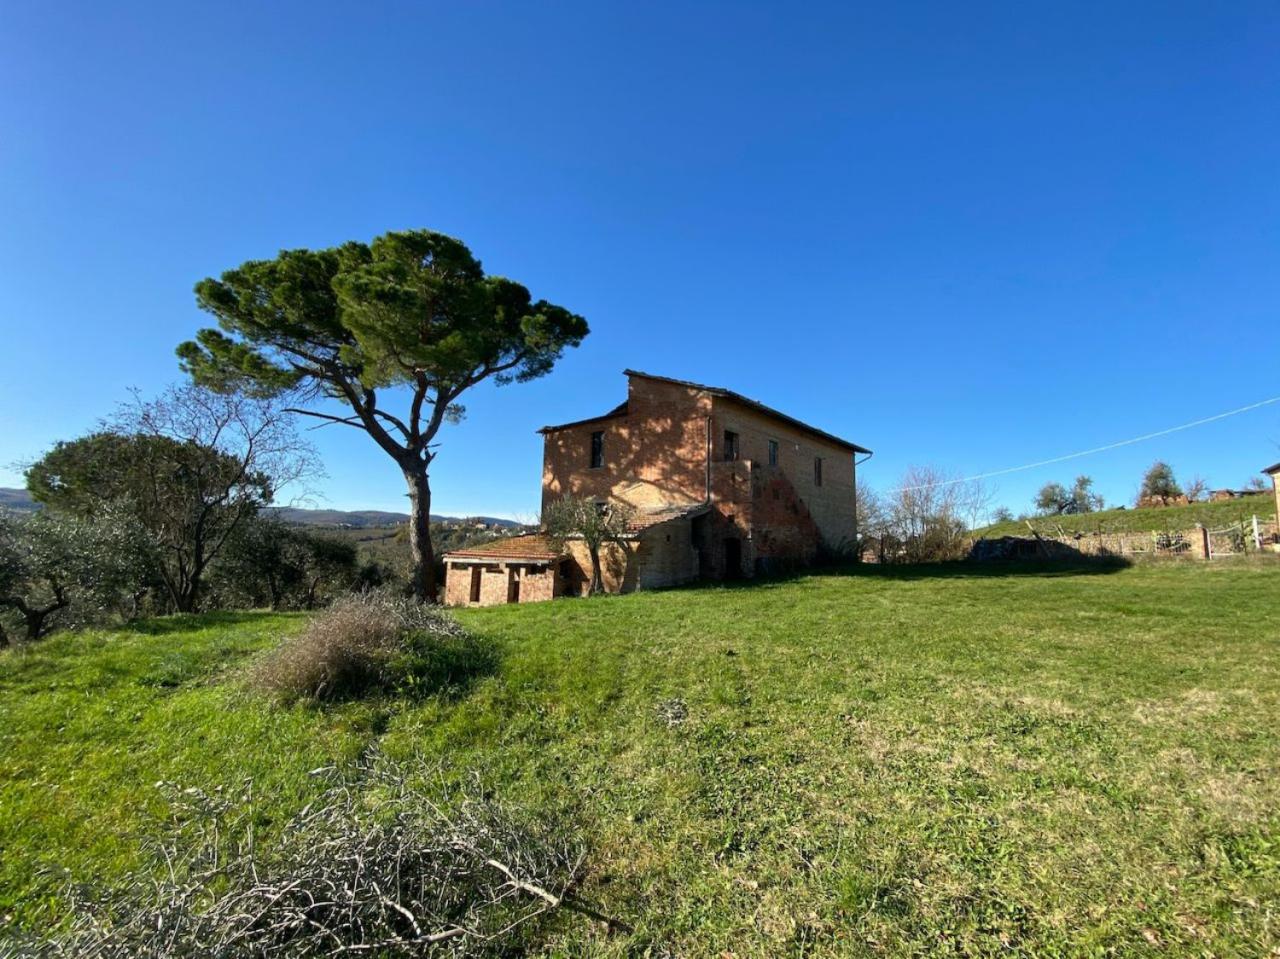 Verkoop Land, Torrita di Siena foto